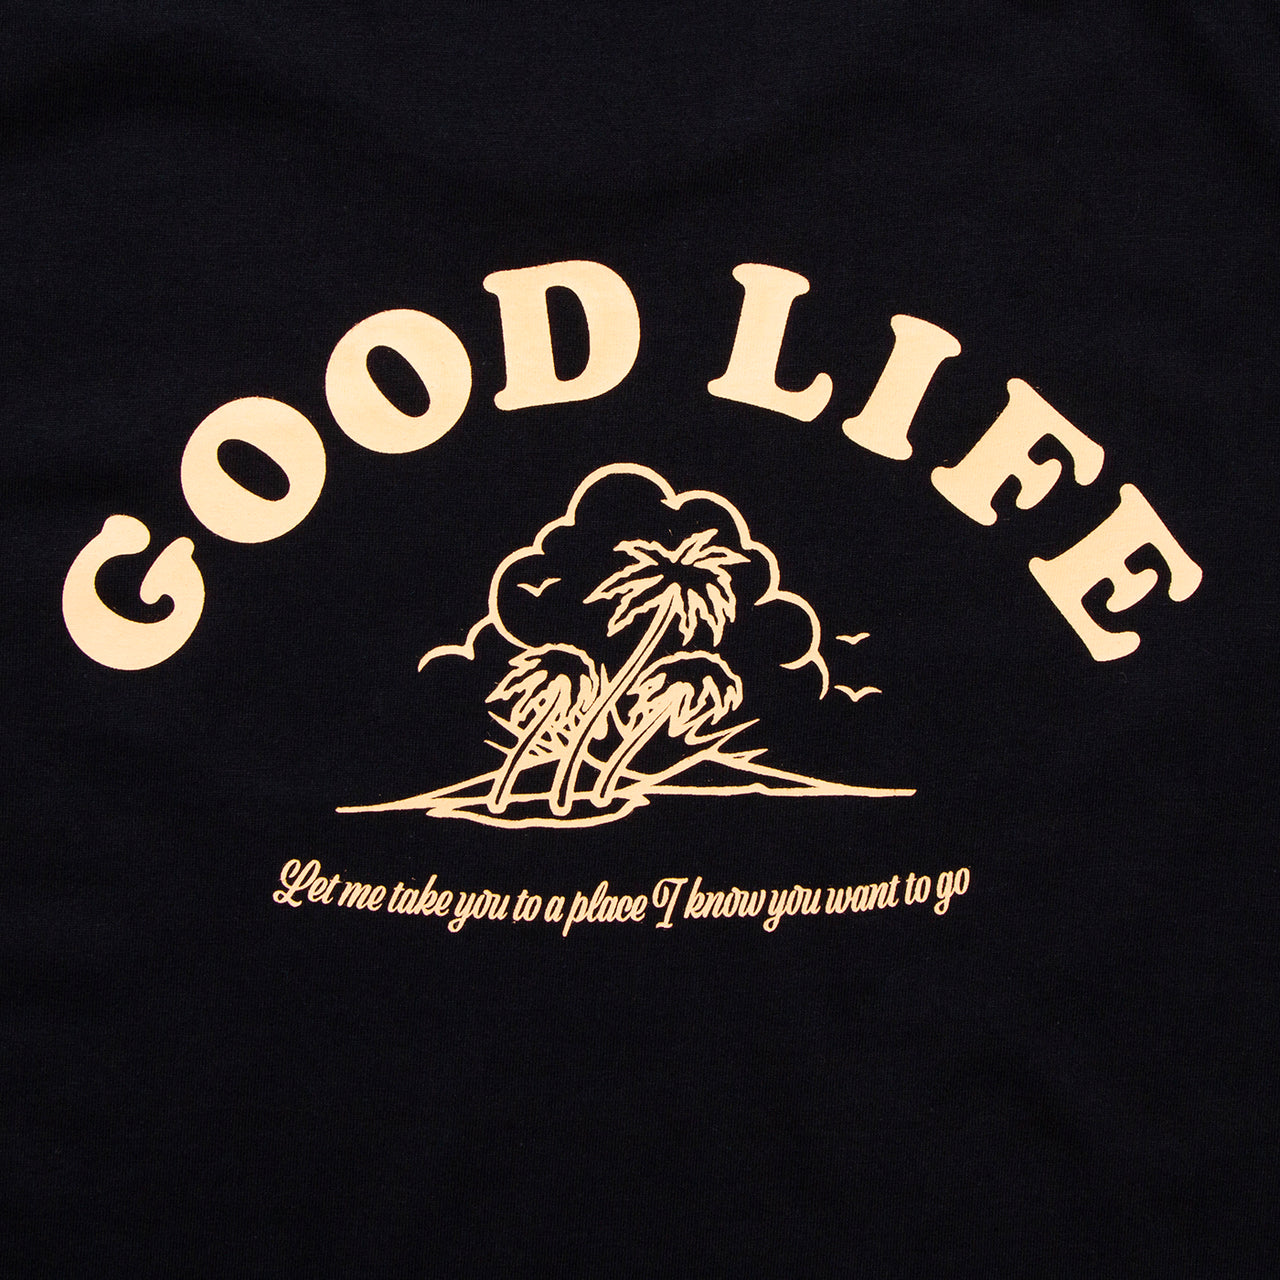 Good Life - Tshirt - Black